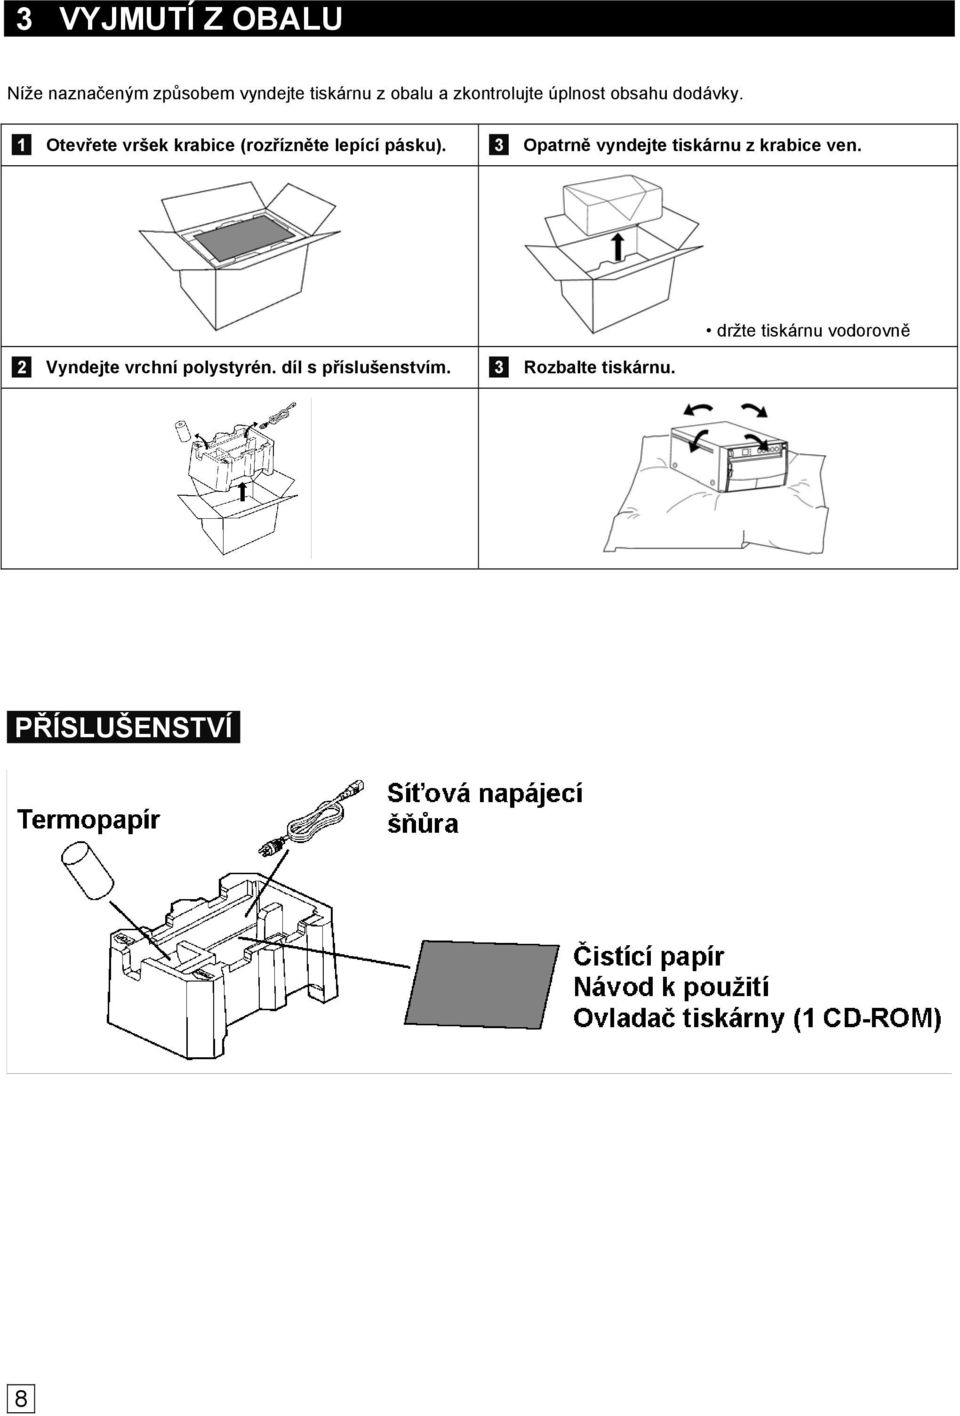 1 Otevřete vršek krabice (rozřízněte lepící pásku).